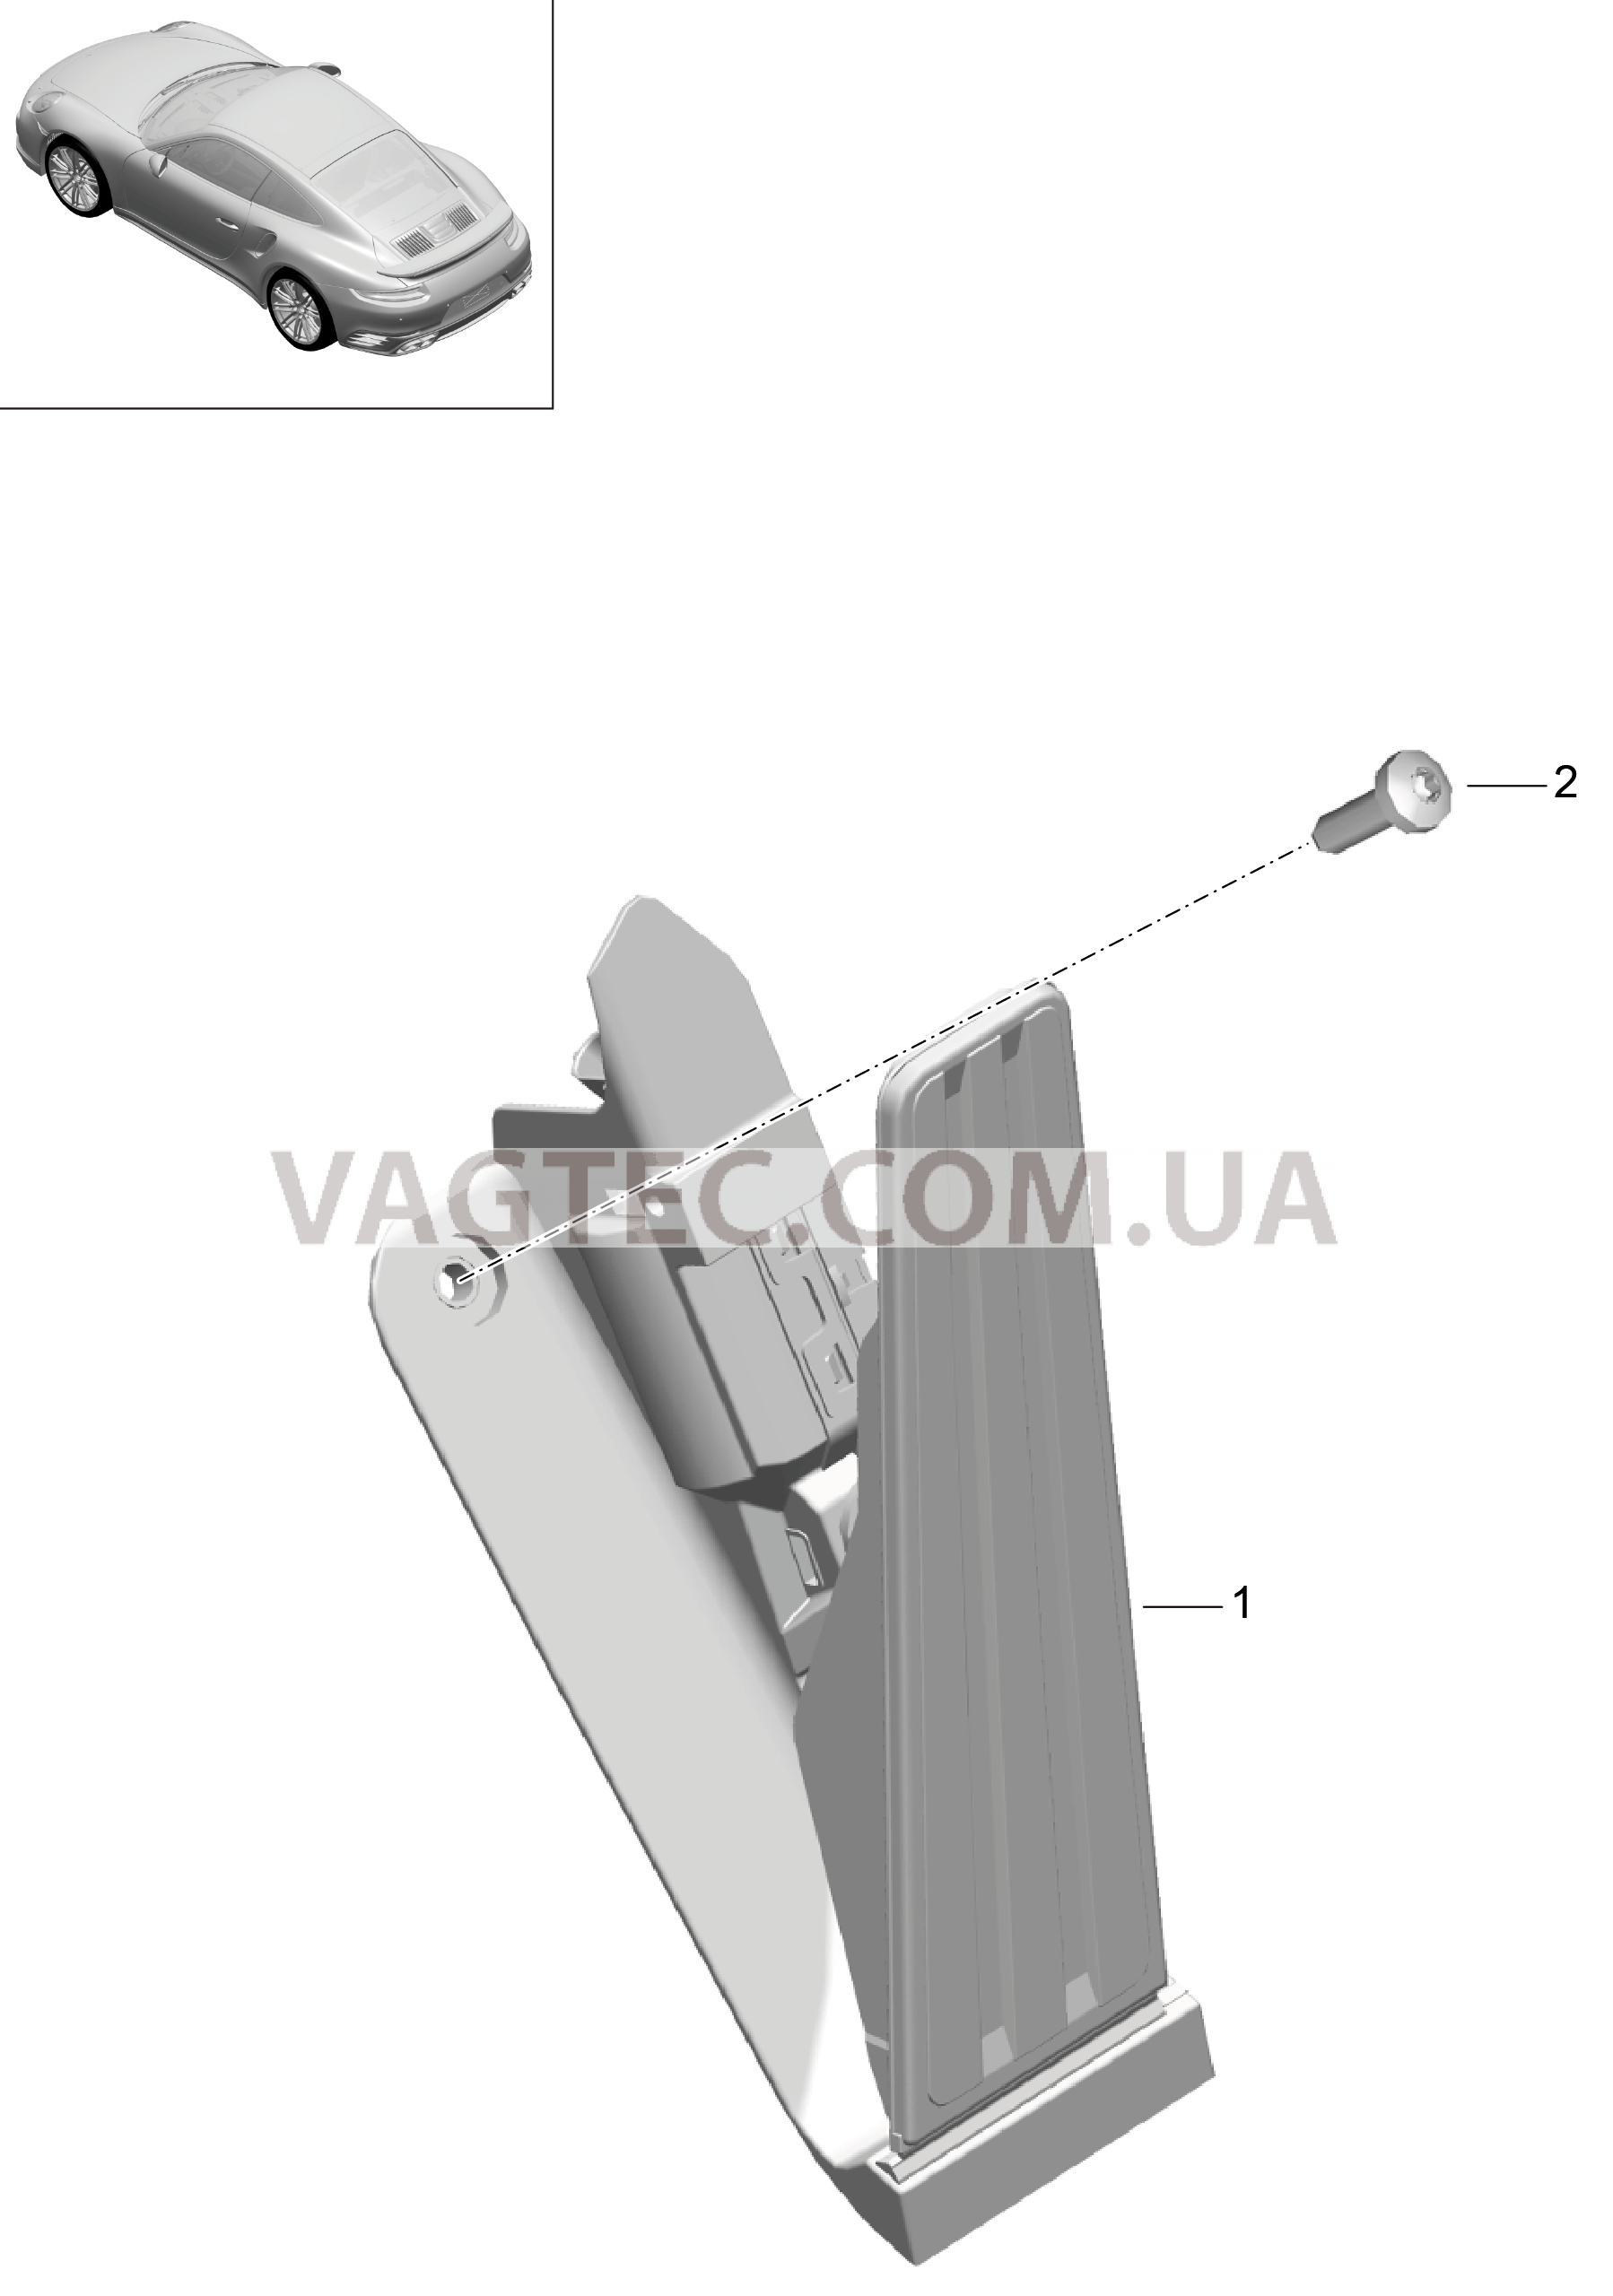 702-012 Педальный механизм, Привод акселератора для PORSCHE Porsche991Turbo 2014-2017